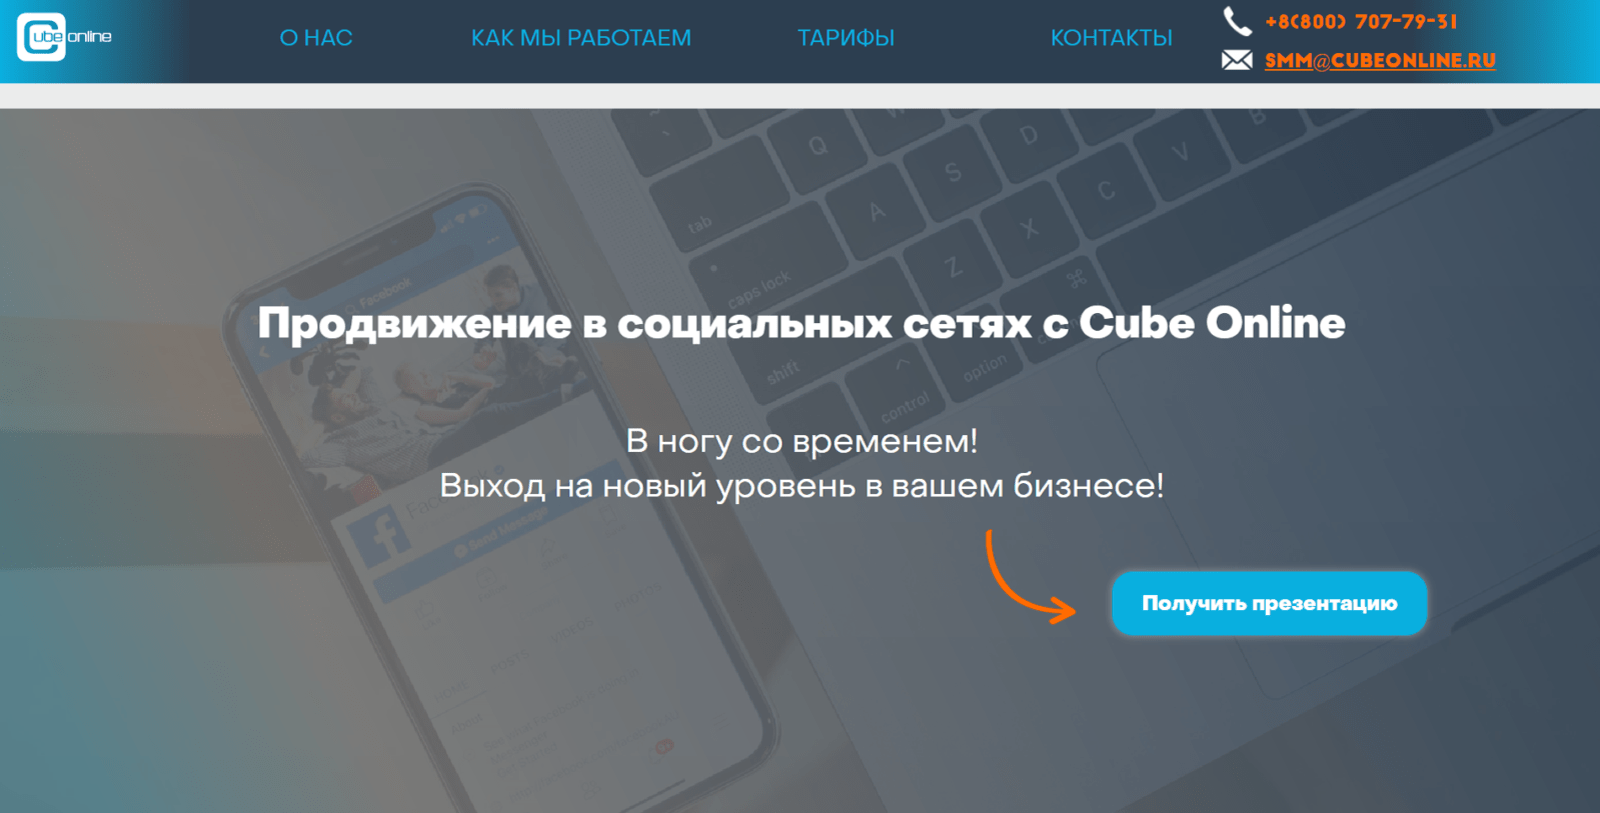 Cube Online Smm